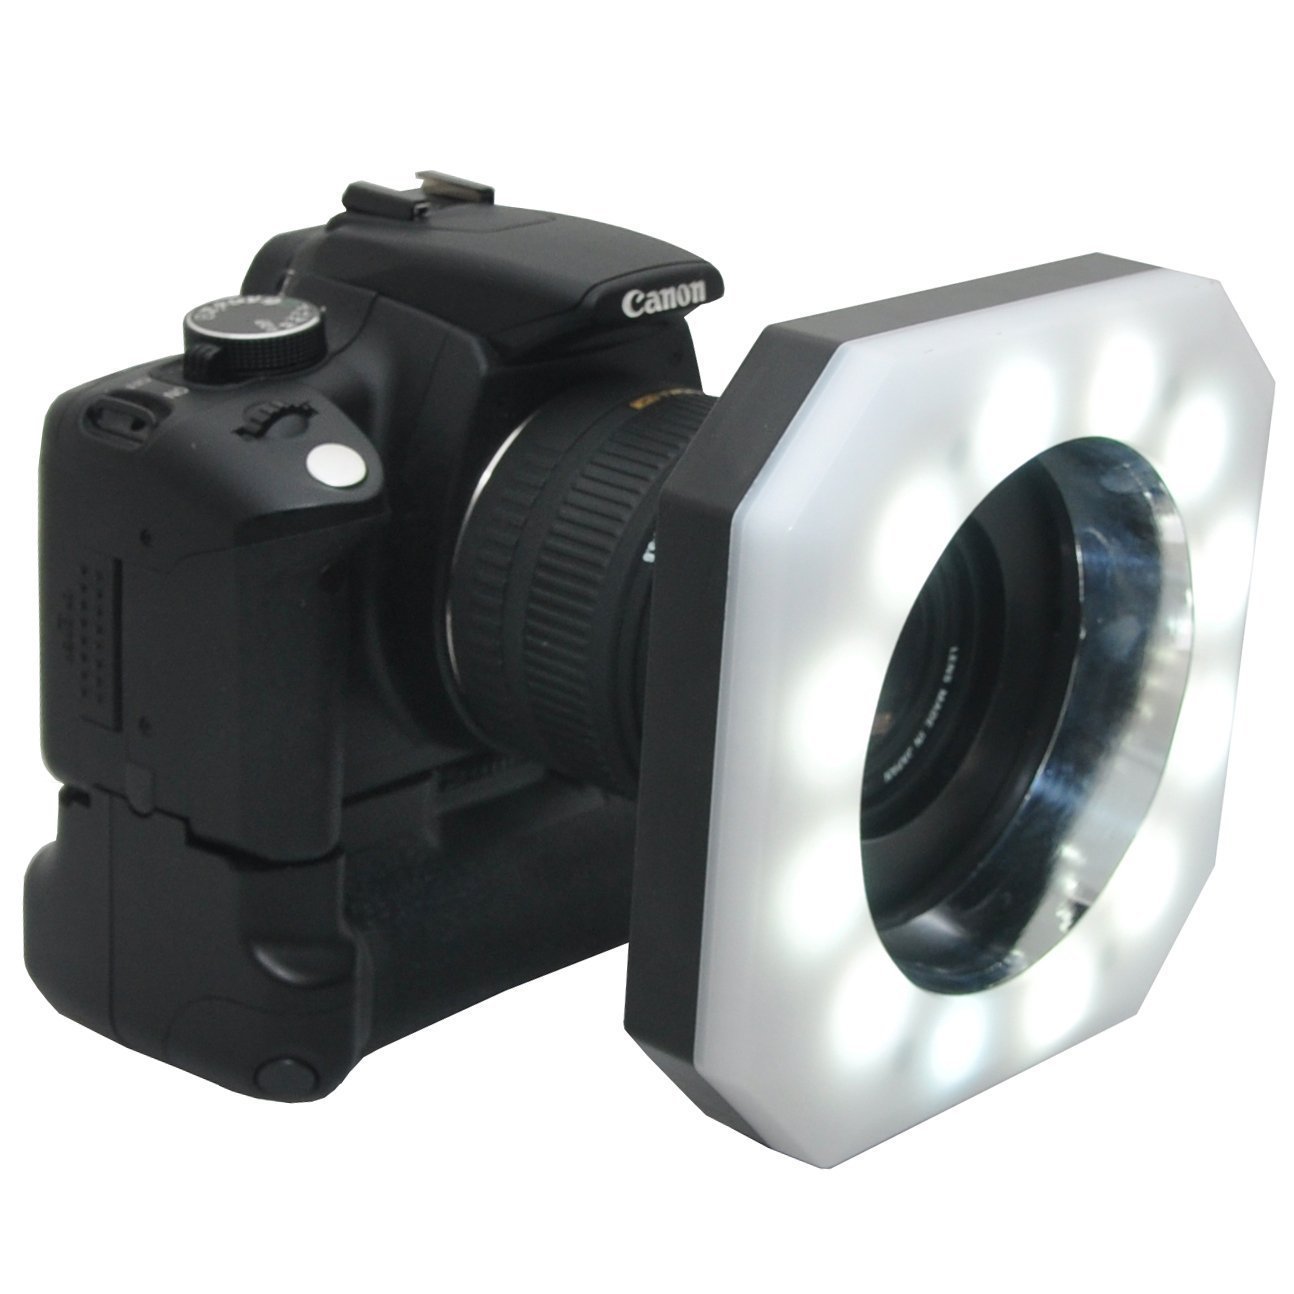 Opteka RL12 Digital Macro LED Ring Light for Nikon D850, D750, D610, D7500, D7600, D7200, D5600, D5500, D5300, D3400 Digital SLR Cameras - image 2 of 5